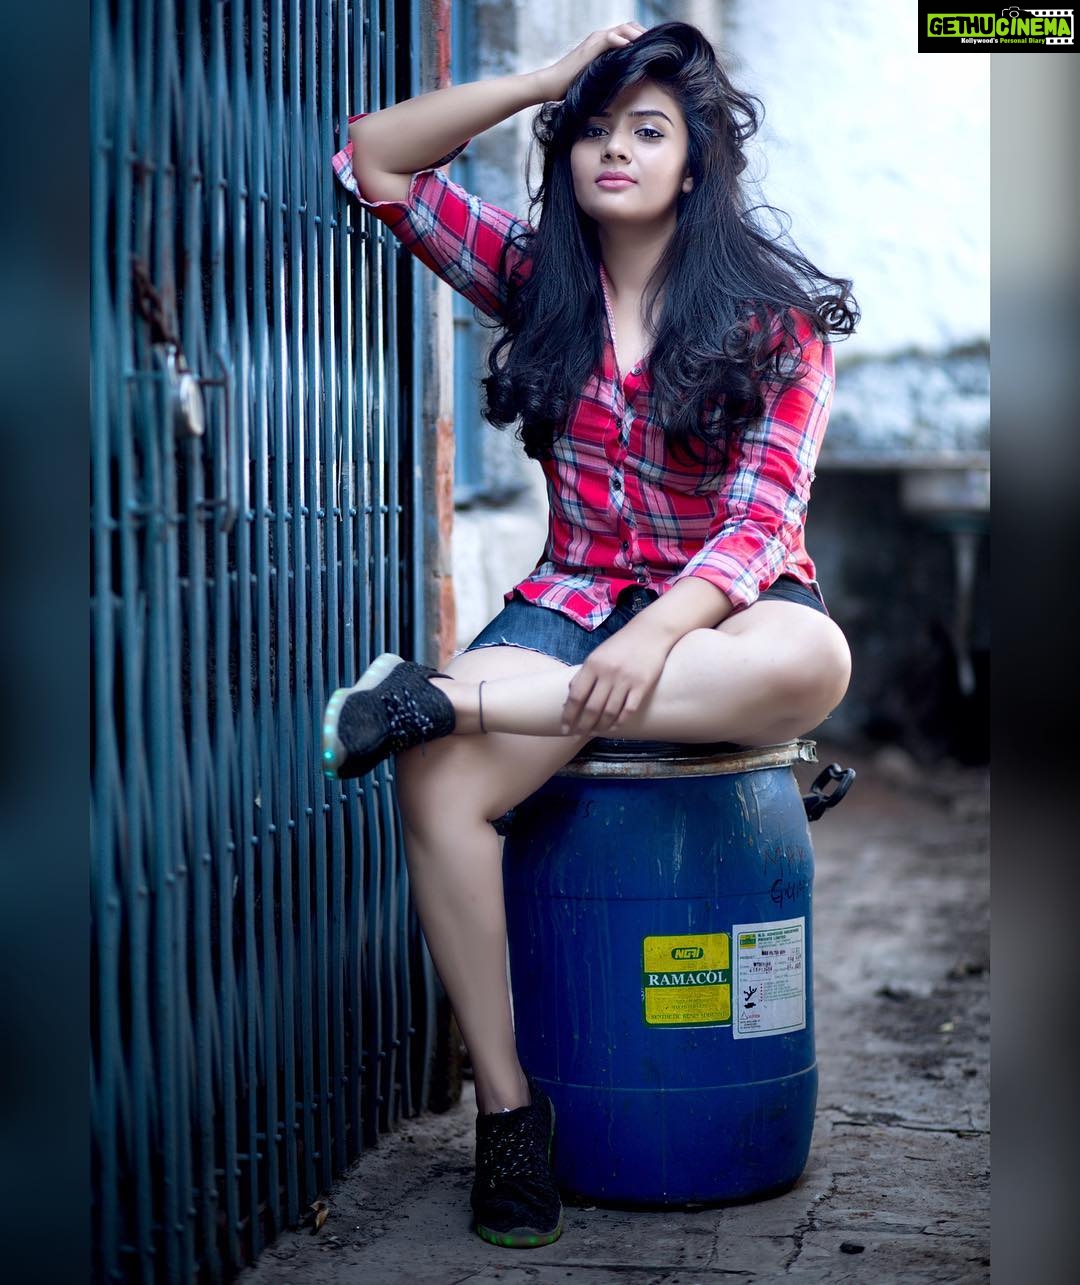 Actress Sreemukhi Instagram Photos and Posts April 2017 - Gethu Cinema